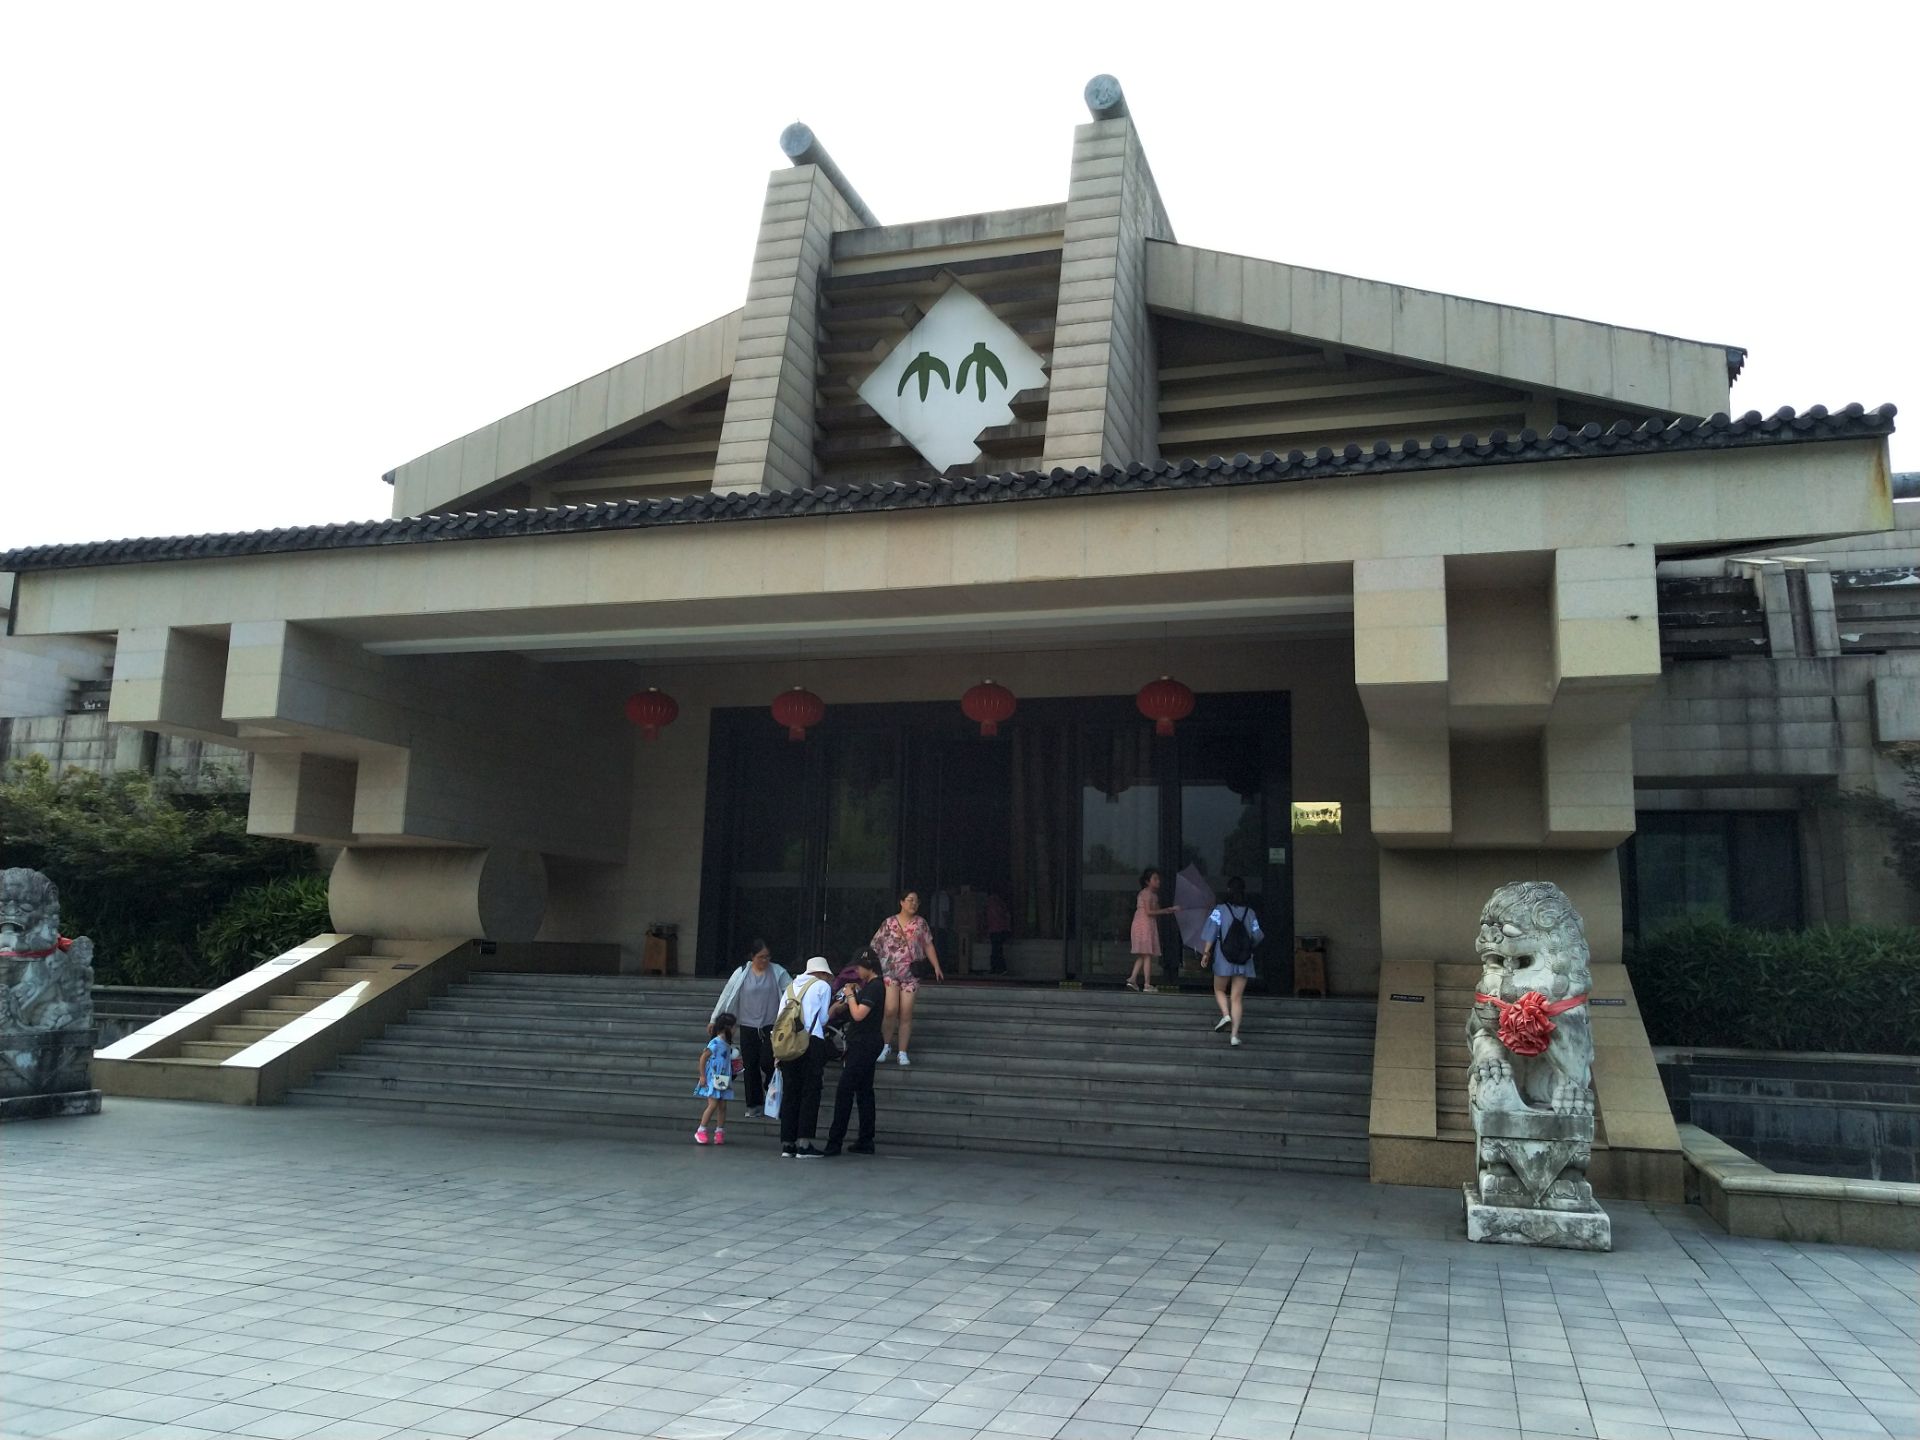 竹子博物馆 - 竹博园 - 安吉余村-竹博园旅游景区